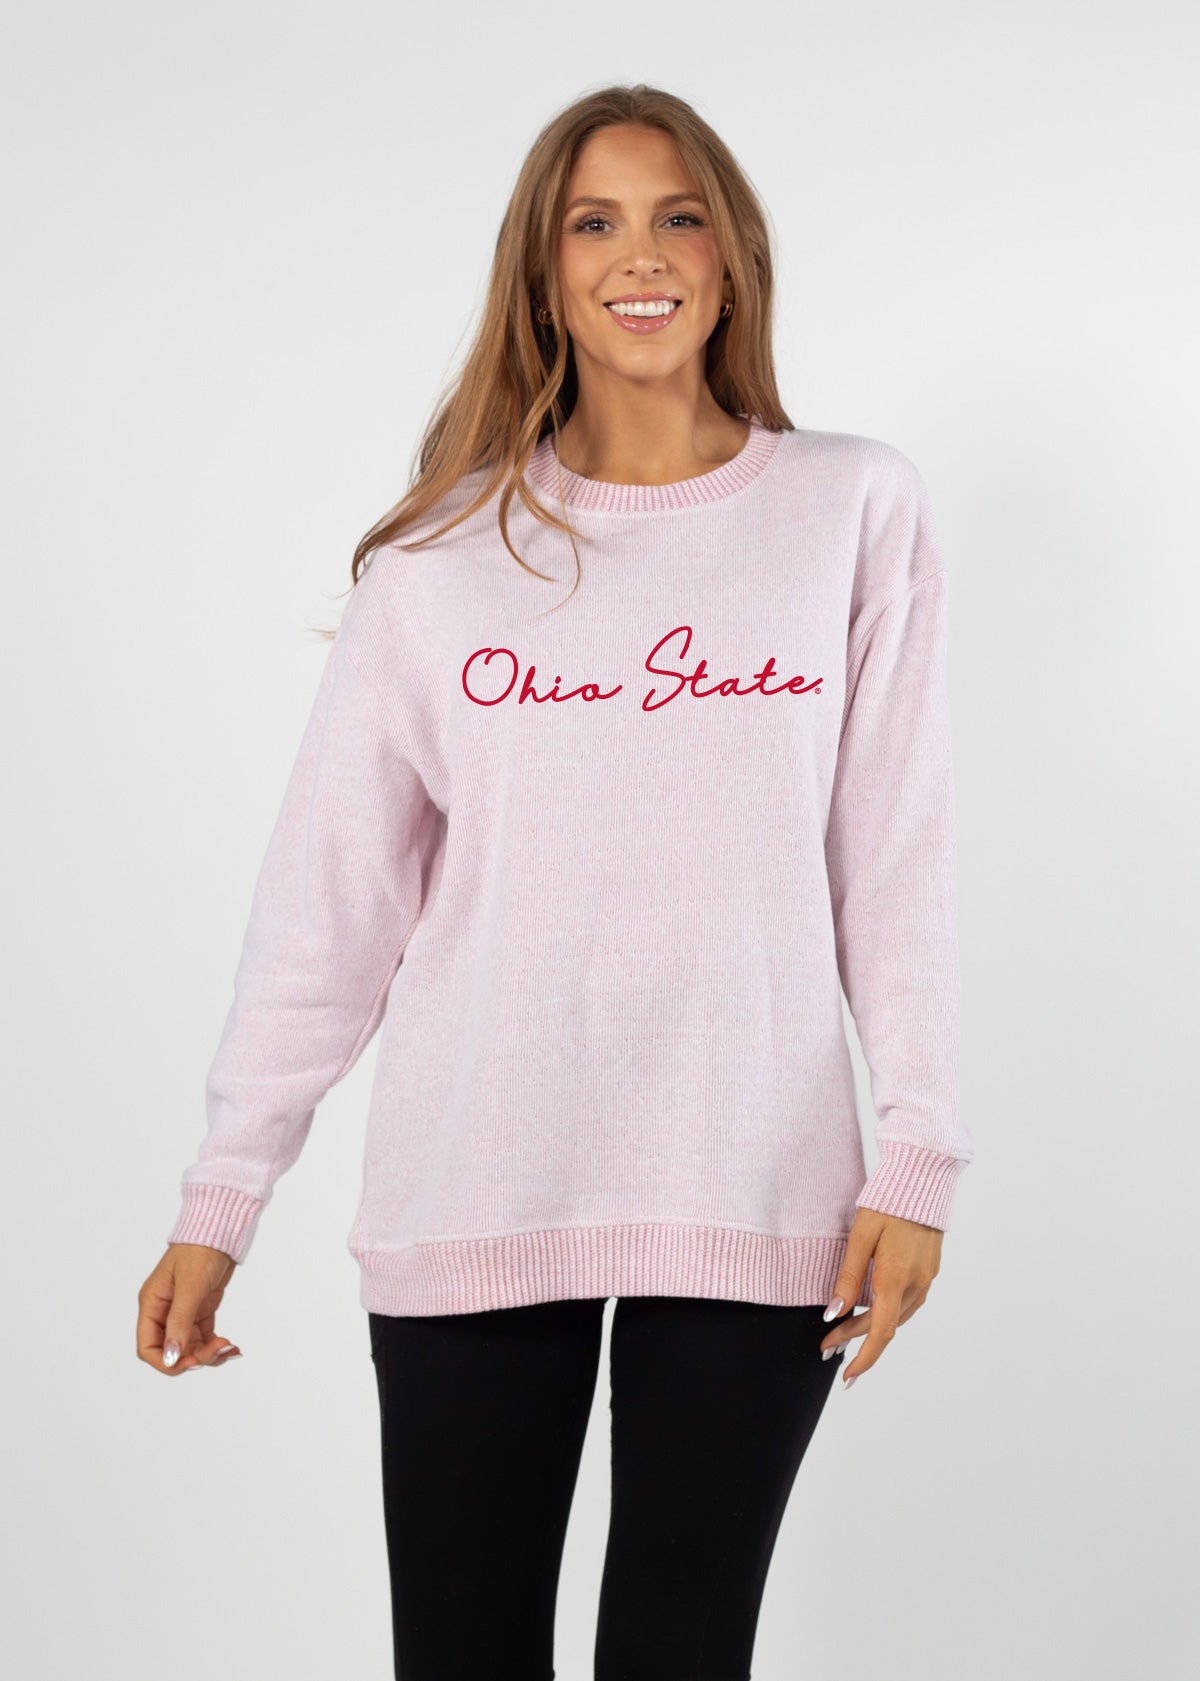 Ohio State Buckeyes sweatshirt plus size